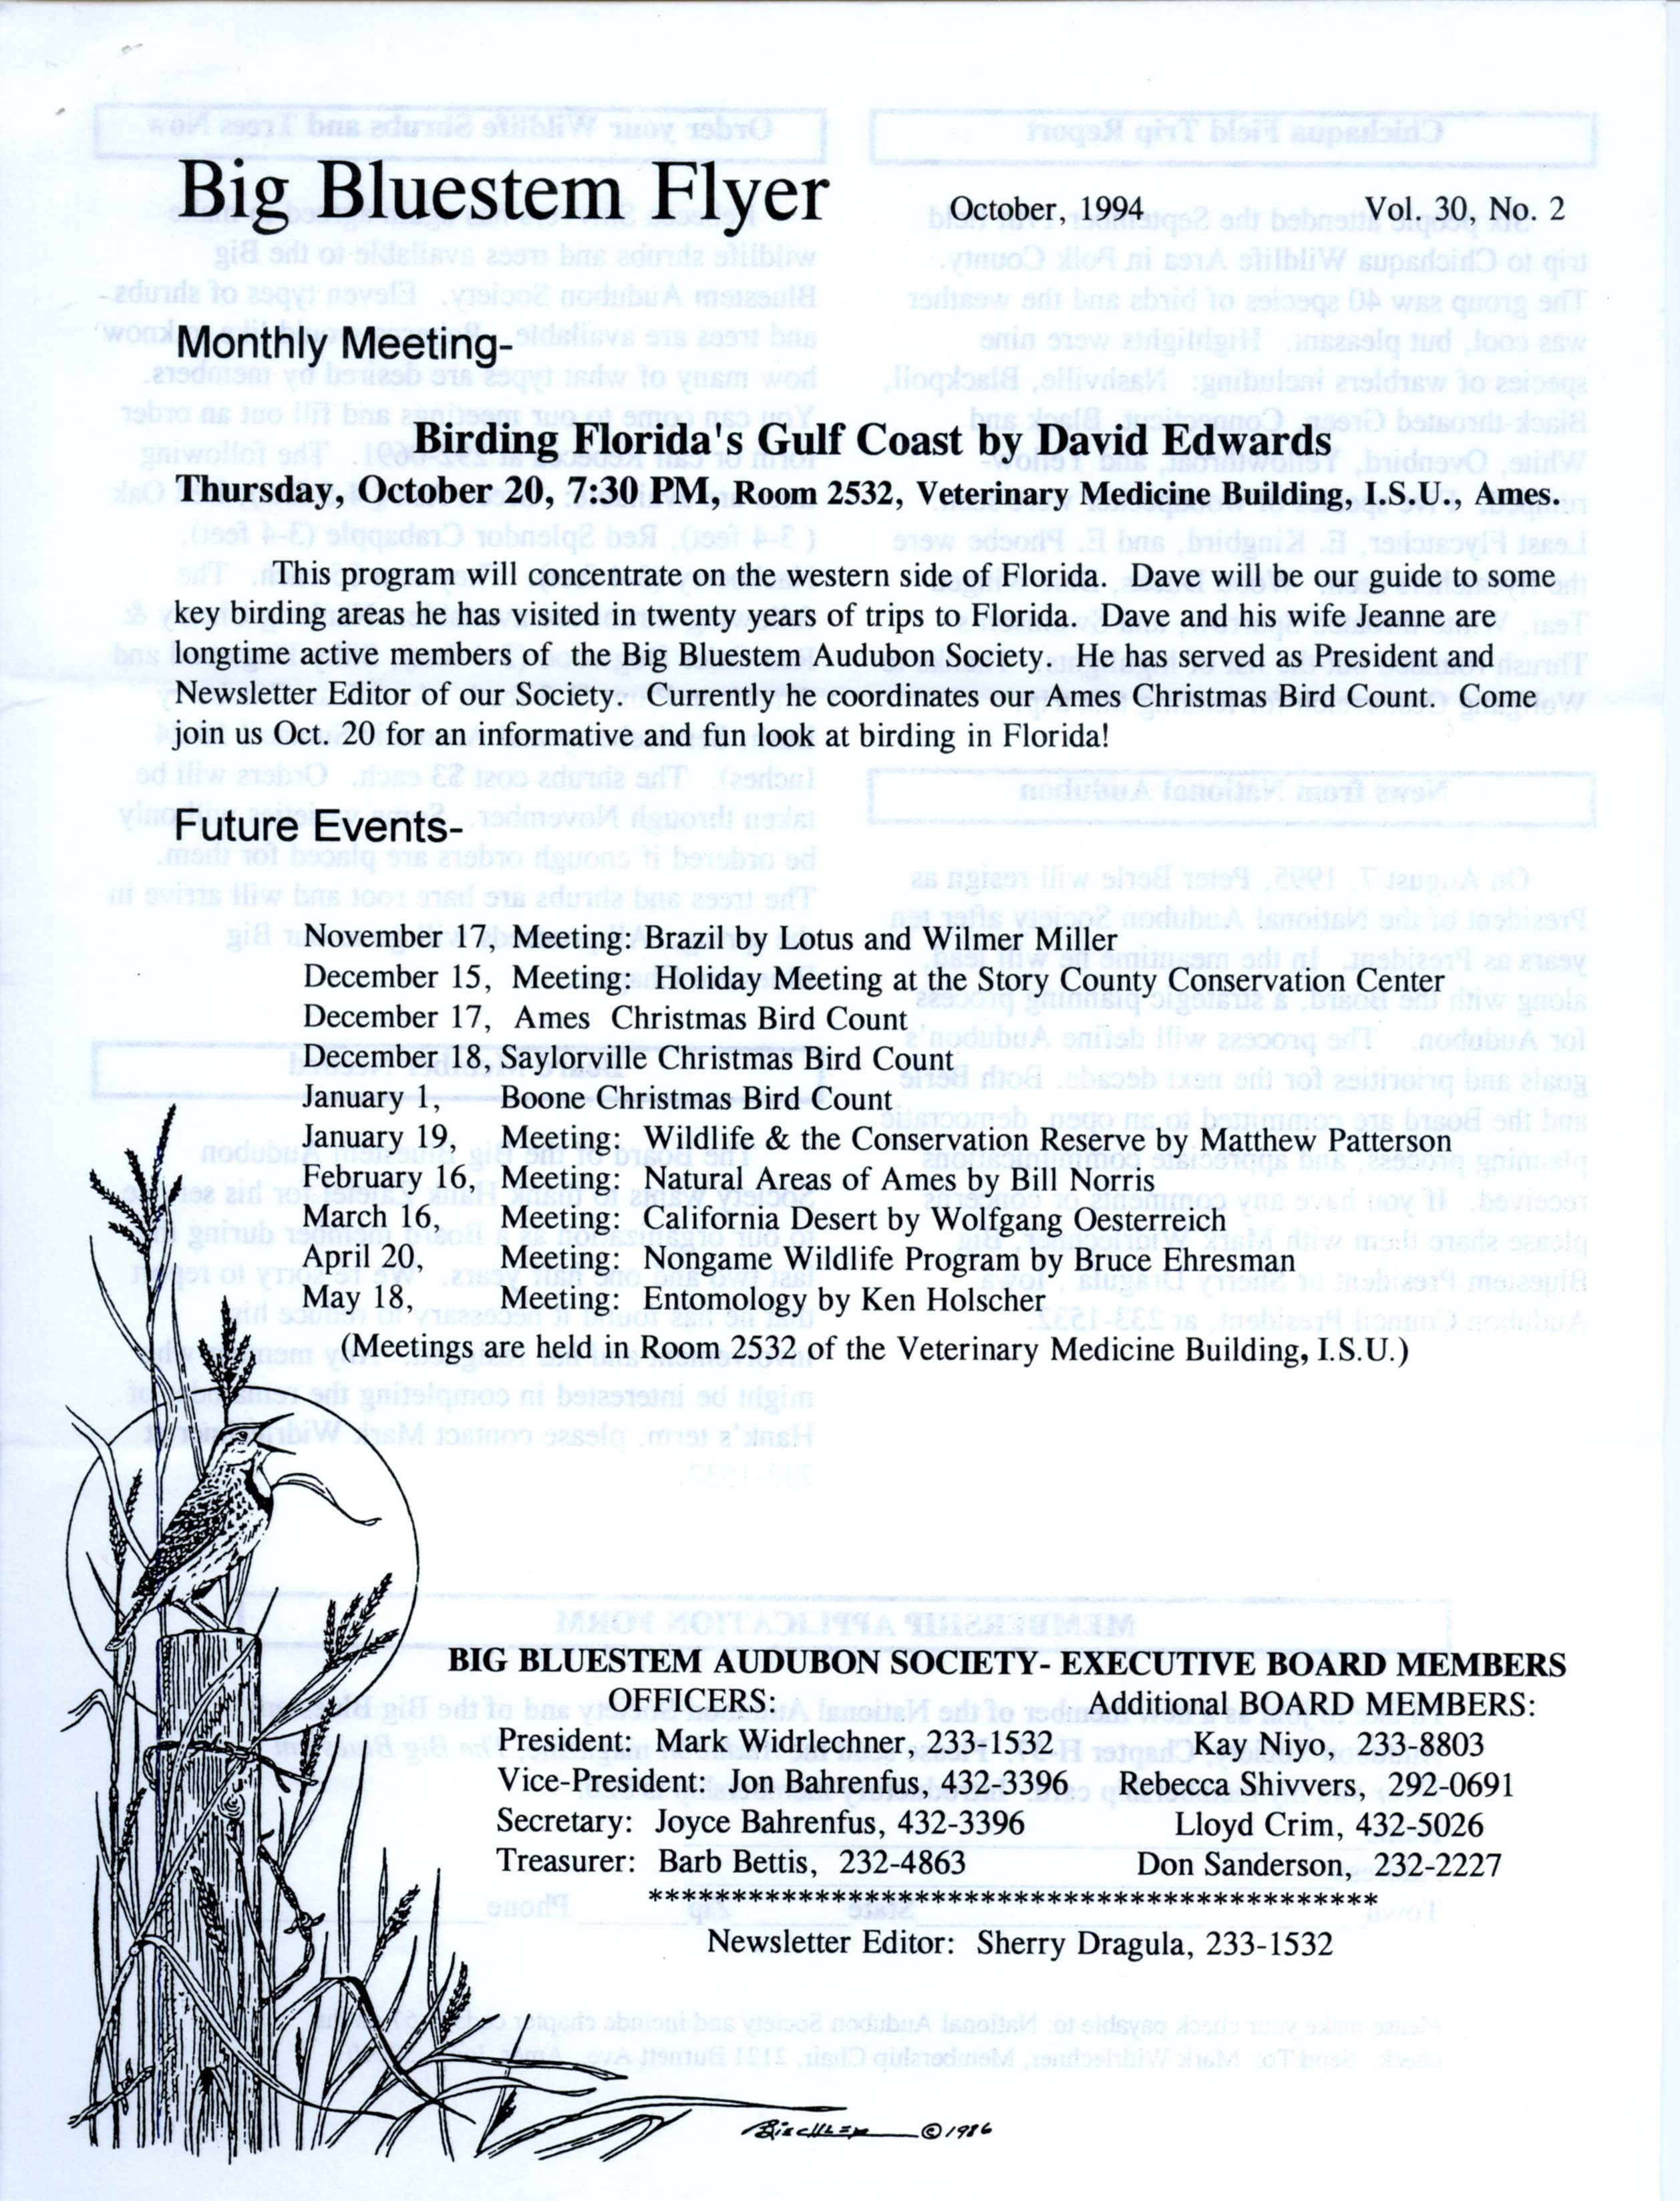 Big Bluestem Flyer, Volume 30, Number 1, October 1994